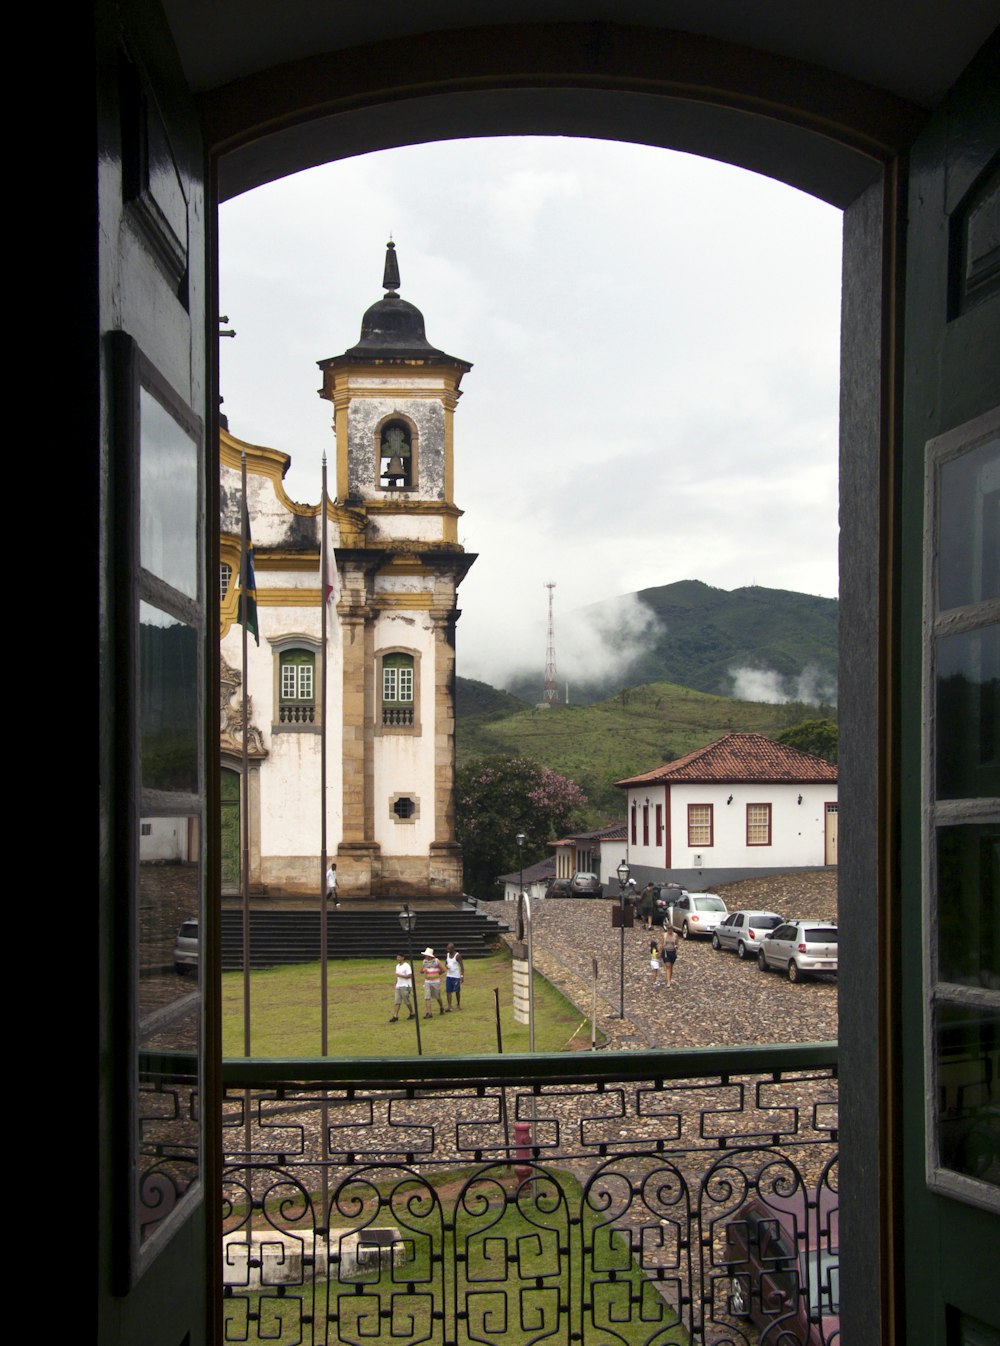 Una vista de la torre de un reloj a través de una puerta abierta